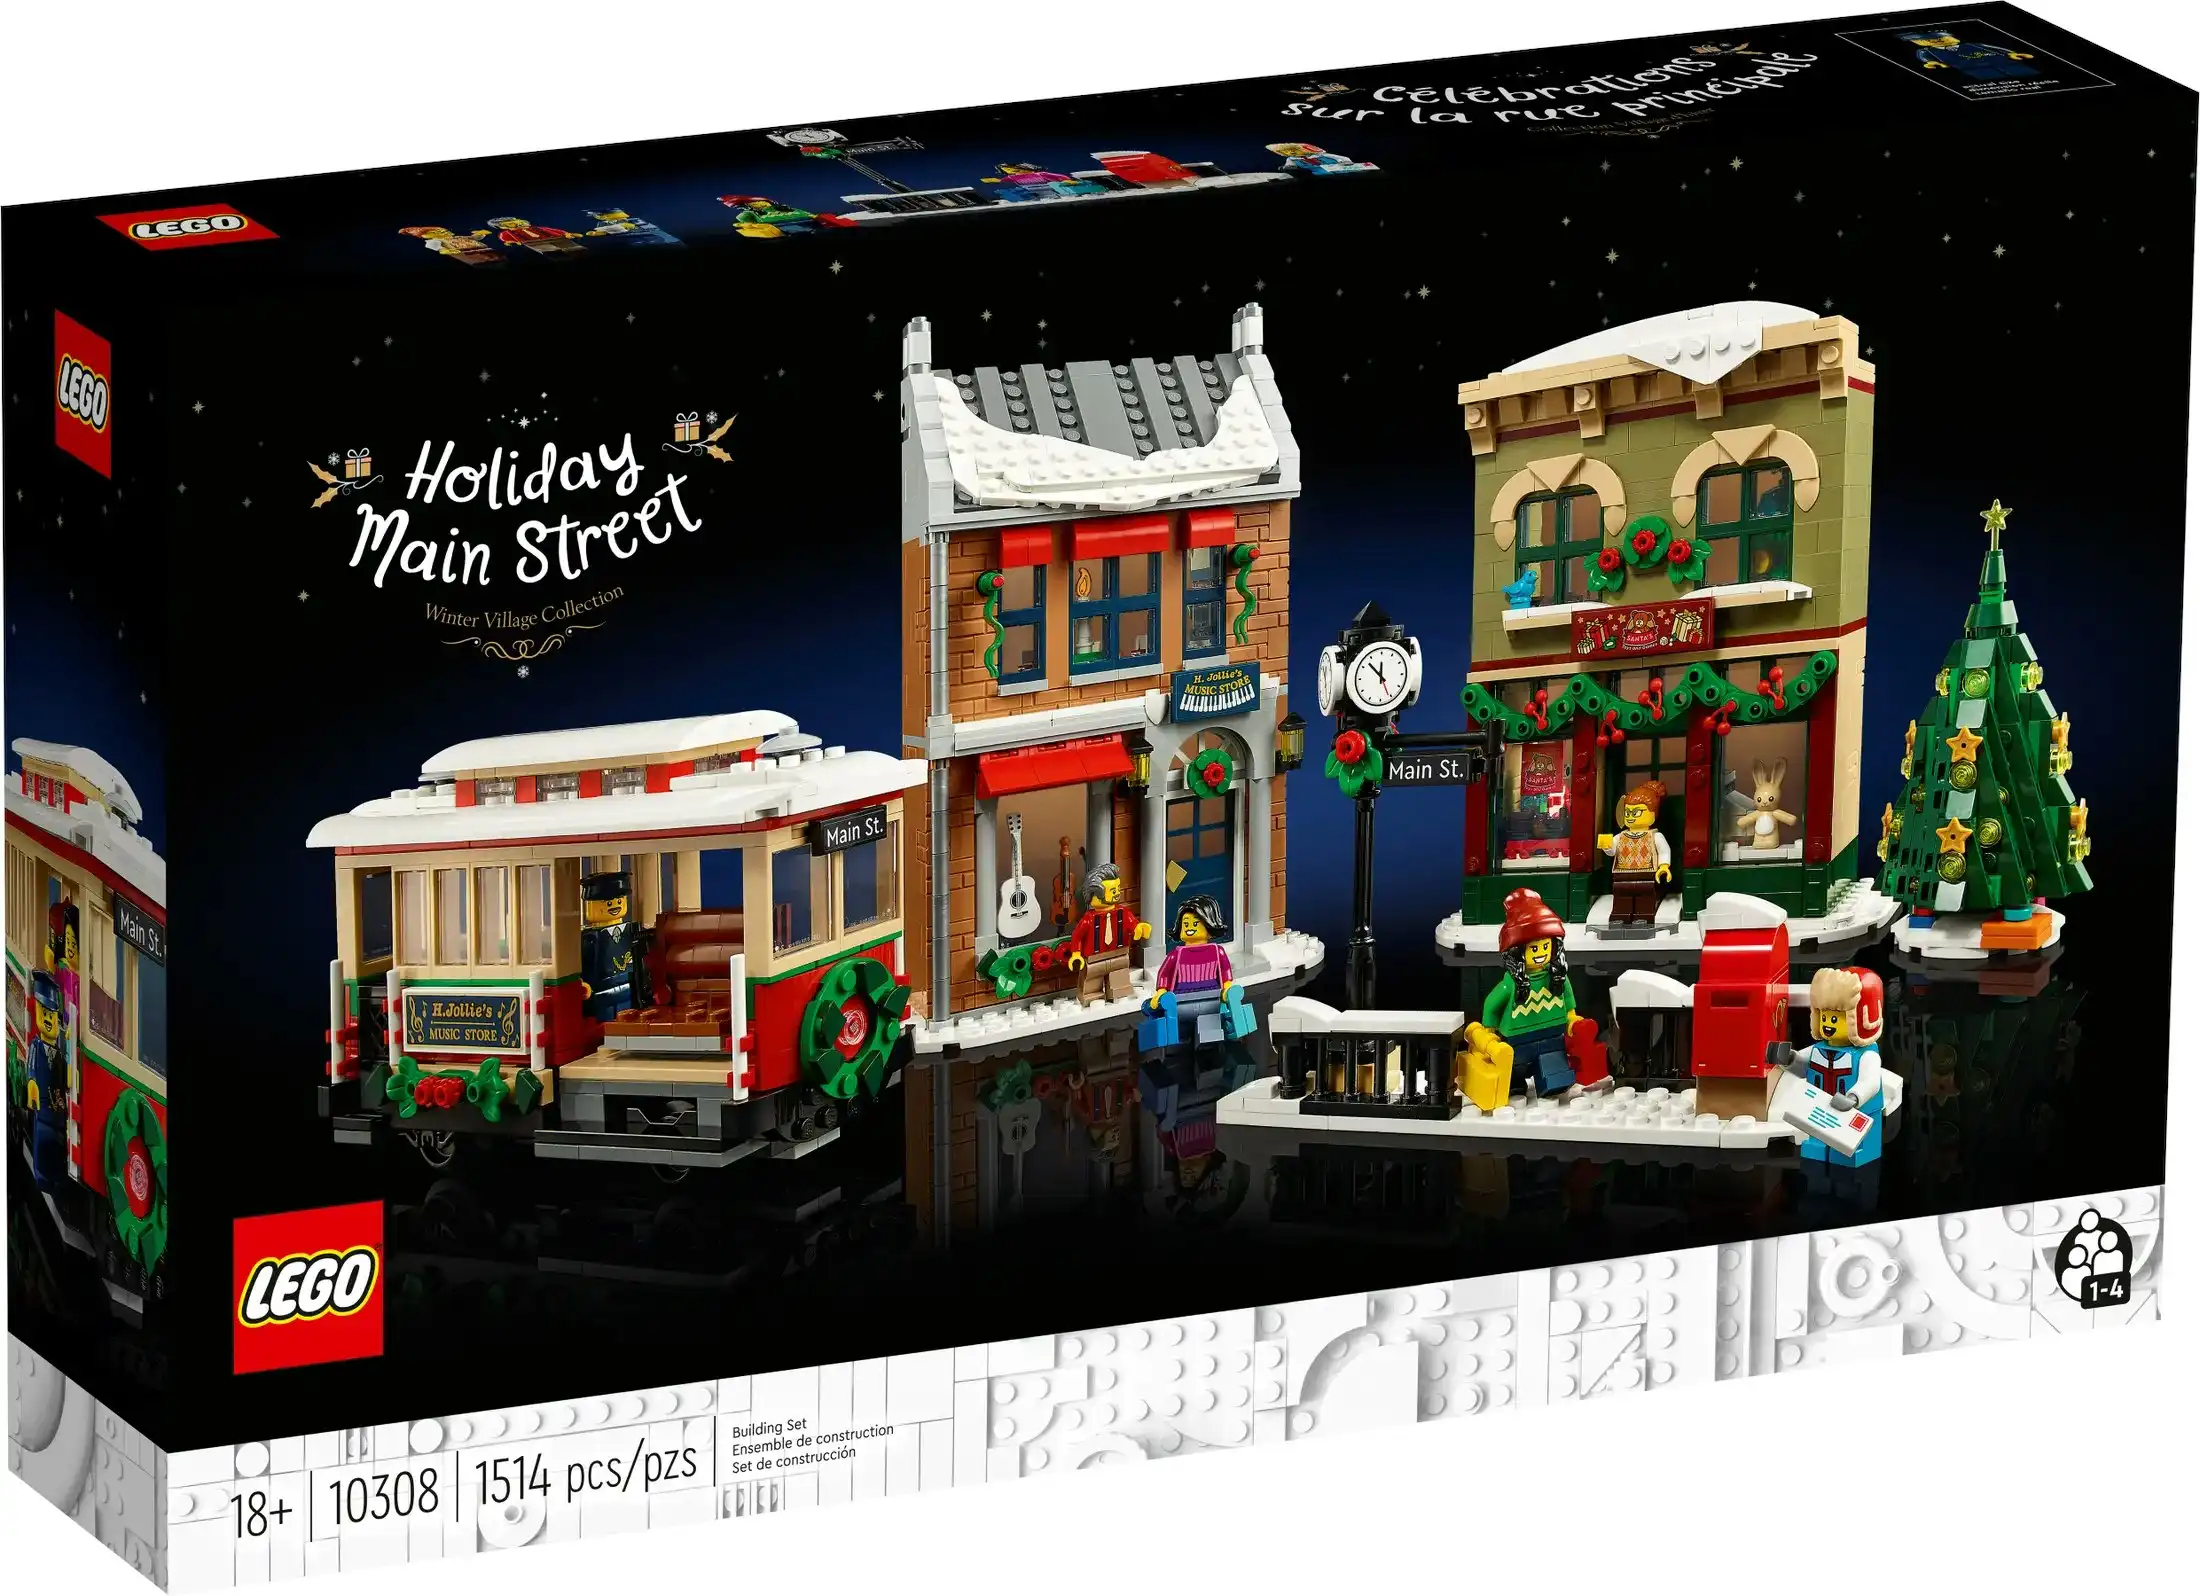 LEGO 10308 Holiday Main Street - Icons